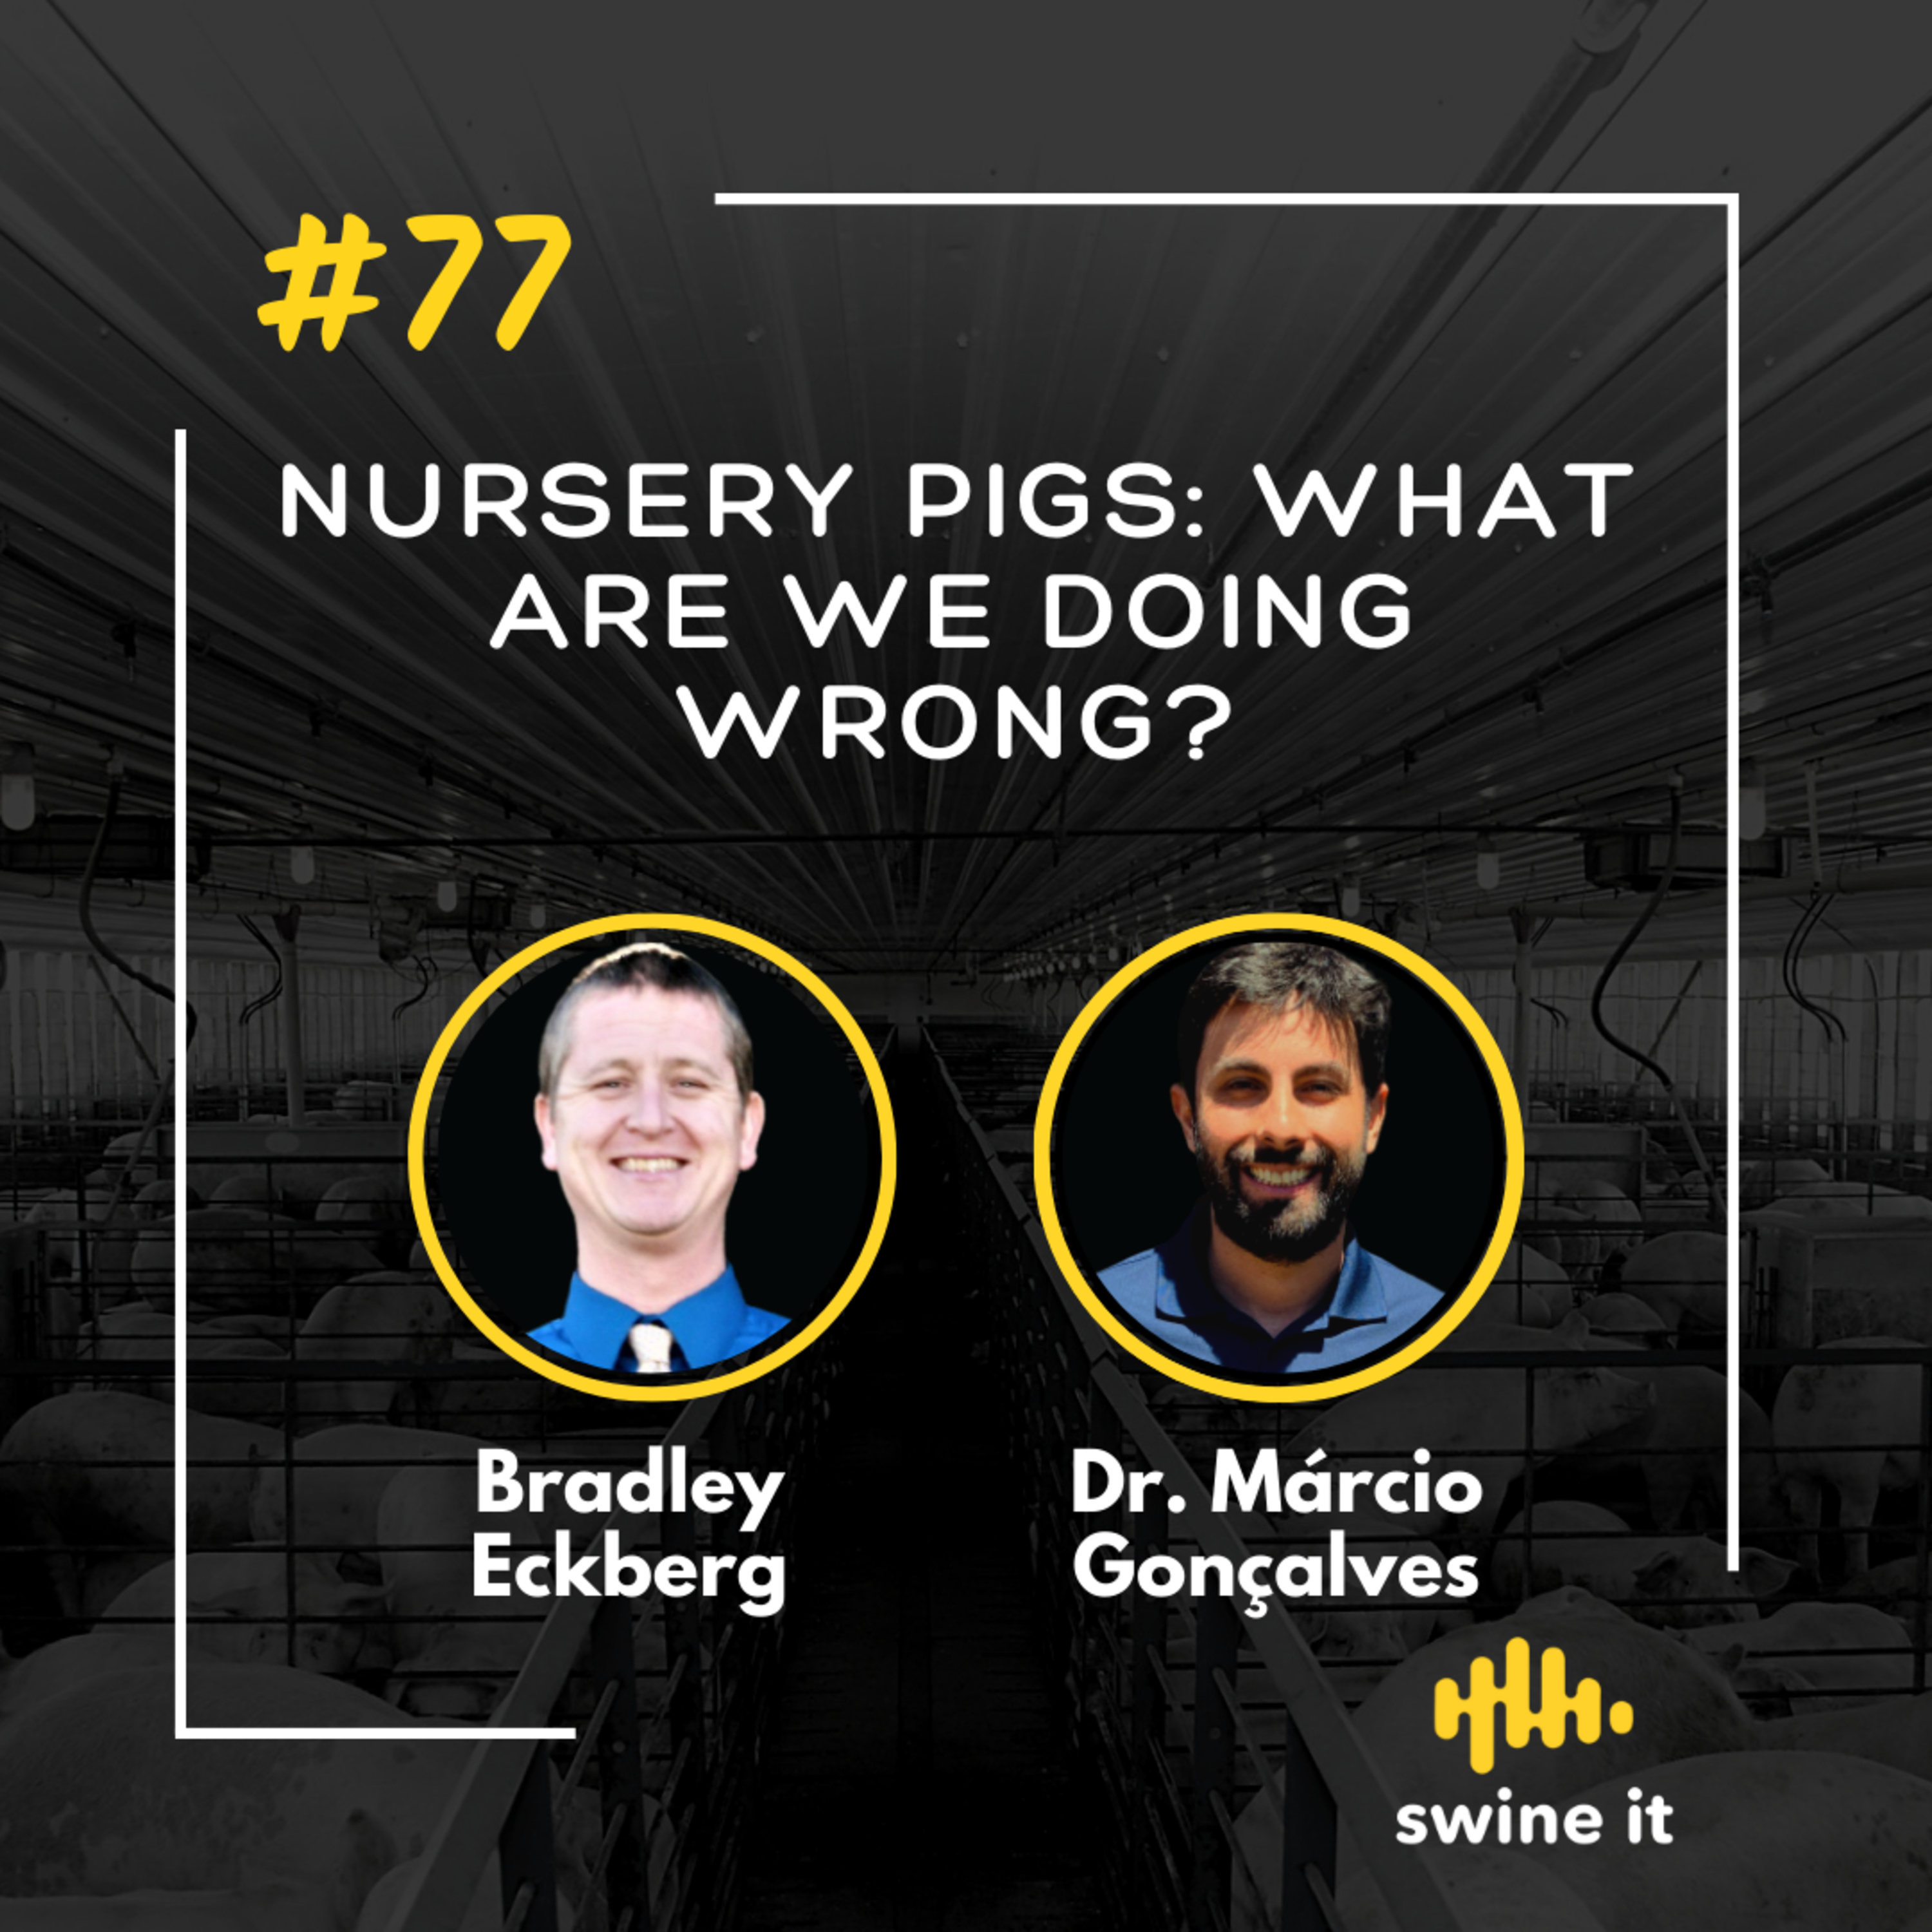 Bradley Eckberg: Nursery Pig Issues | Ep. 77